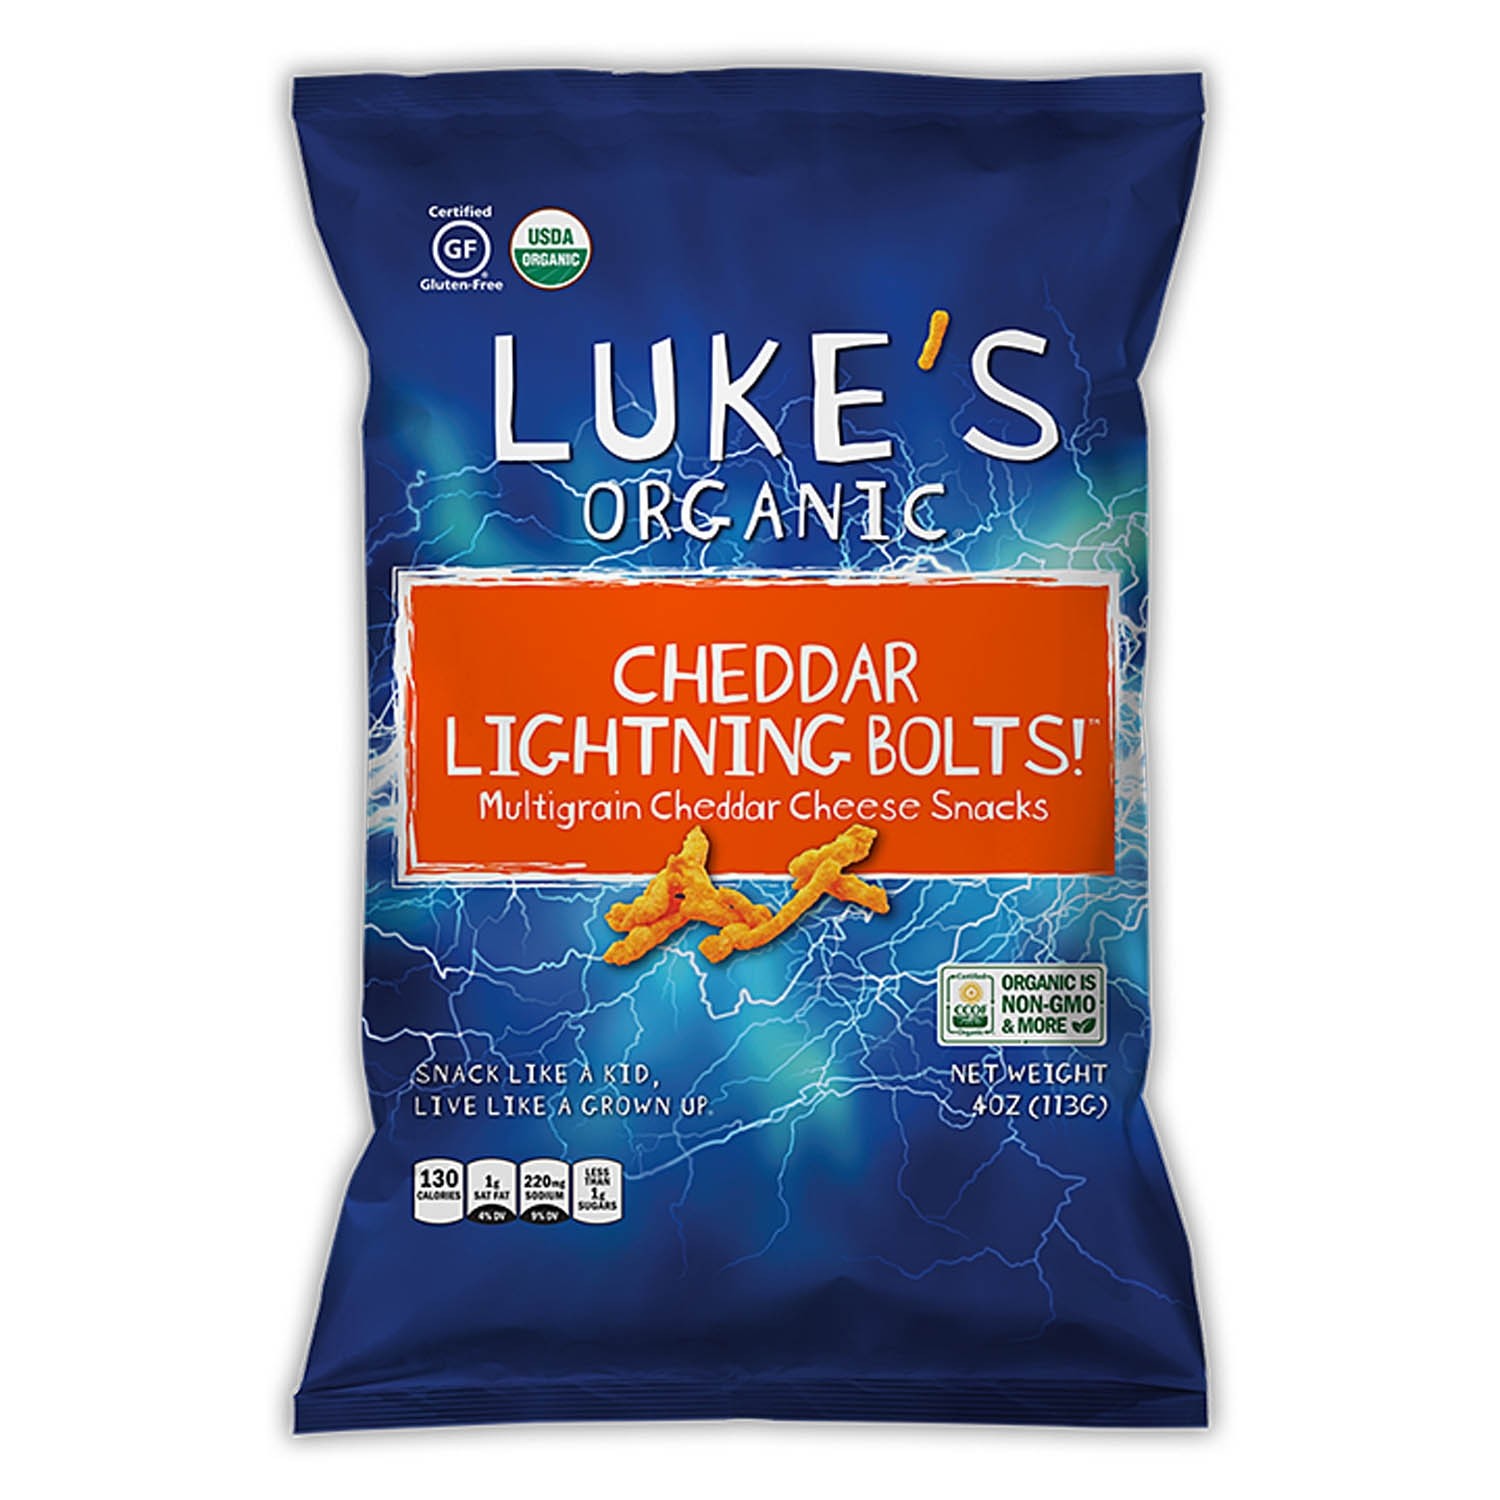 美國有機無麩質風暴雷電螺栓- 多穀車打芝士小食 "Luke's Organic" GLUTEN FREE Firestorm Lightning Bolts - Multigrain Spicy Cheddar Cheese Snacks